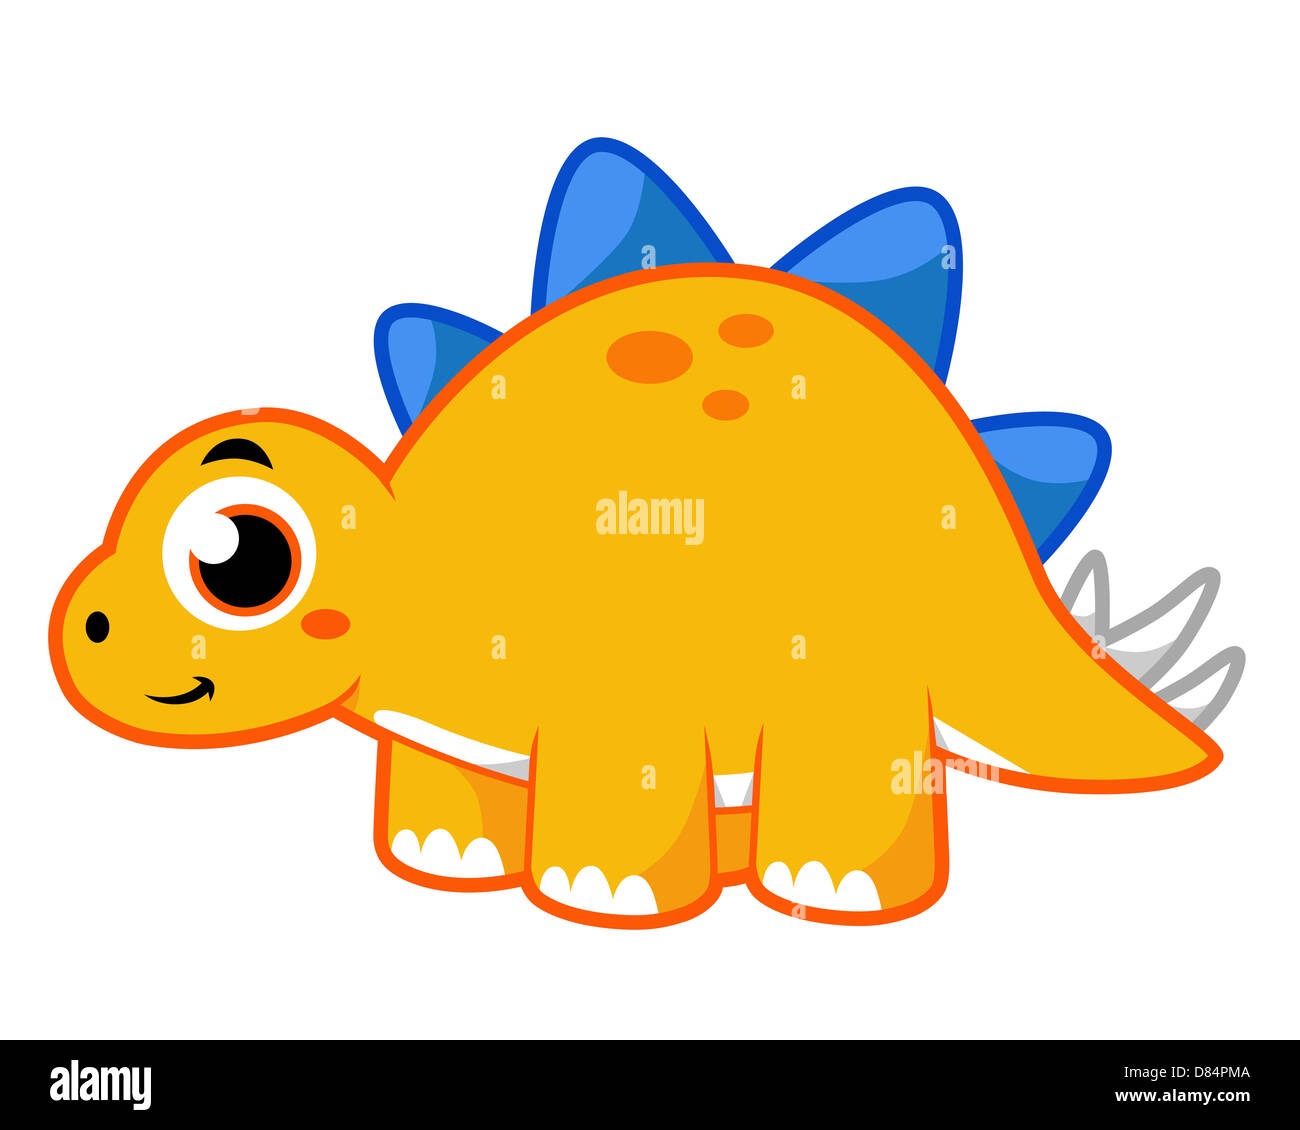 Ilustración de un lindo Stegosaurus. Foto de stock